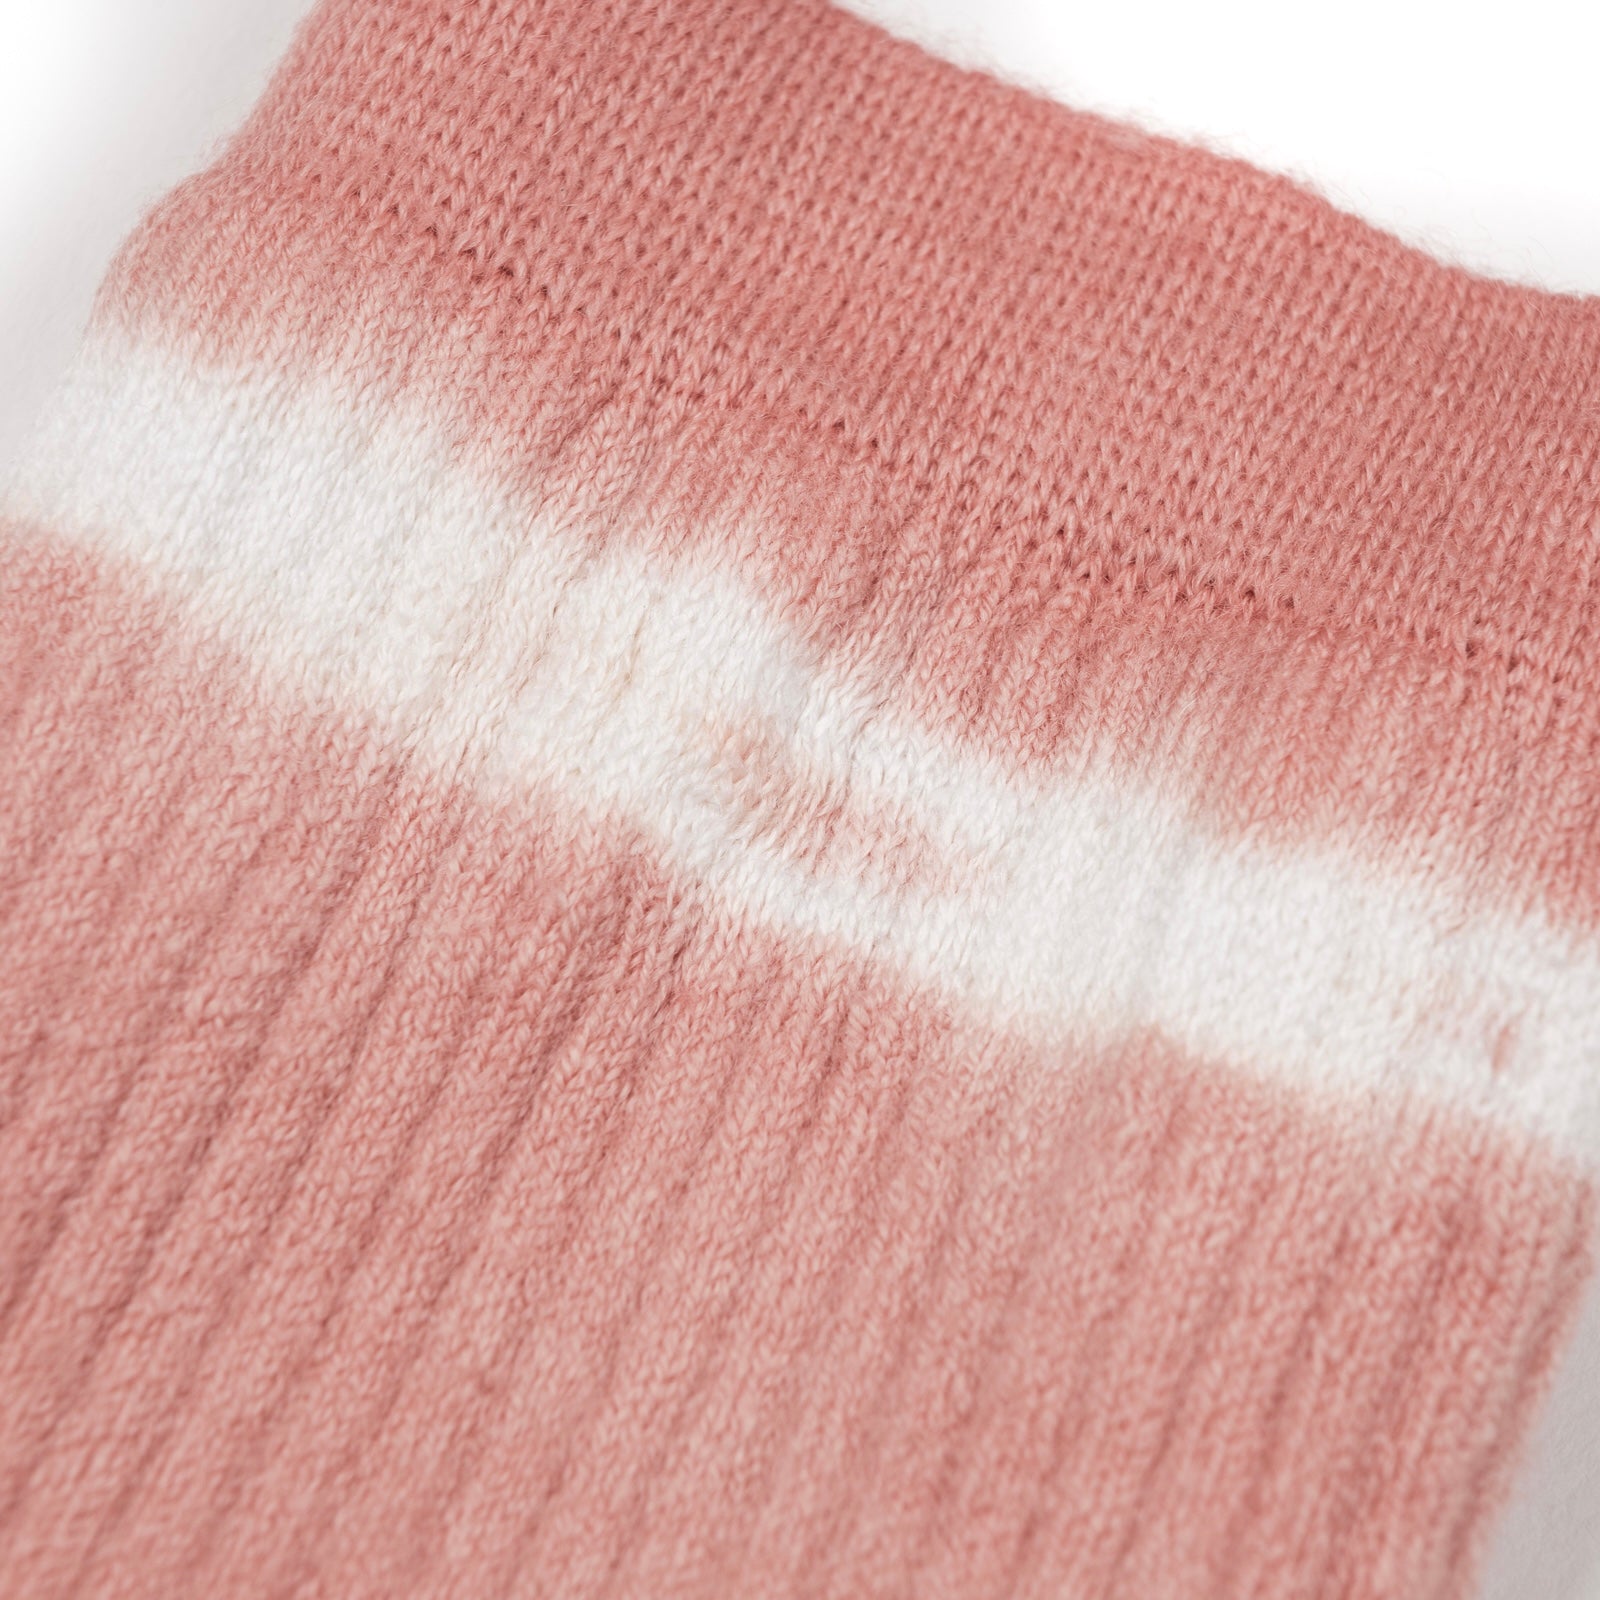 Satisfy - Merino Tube Socks (Dusty Pink Tie-Dye)